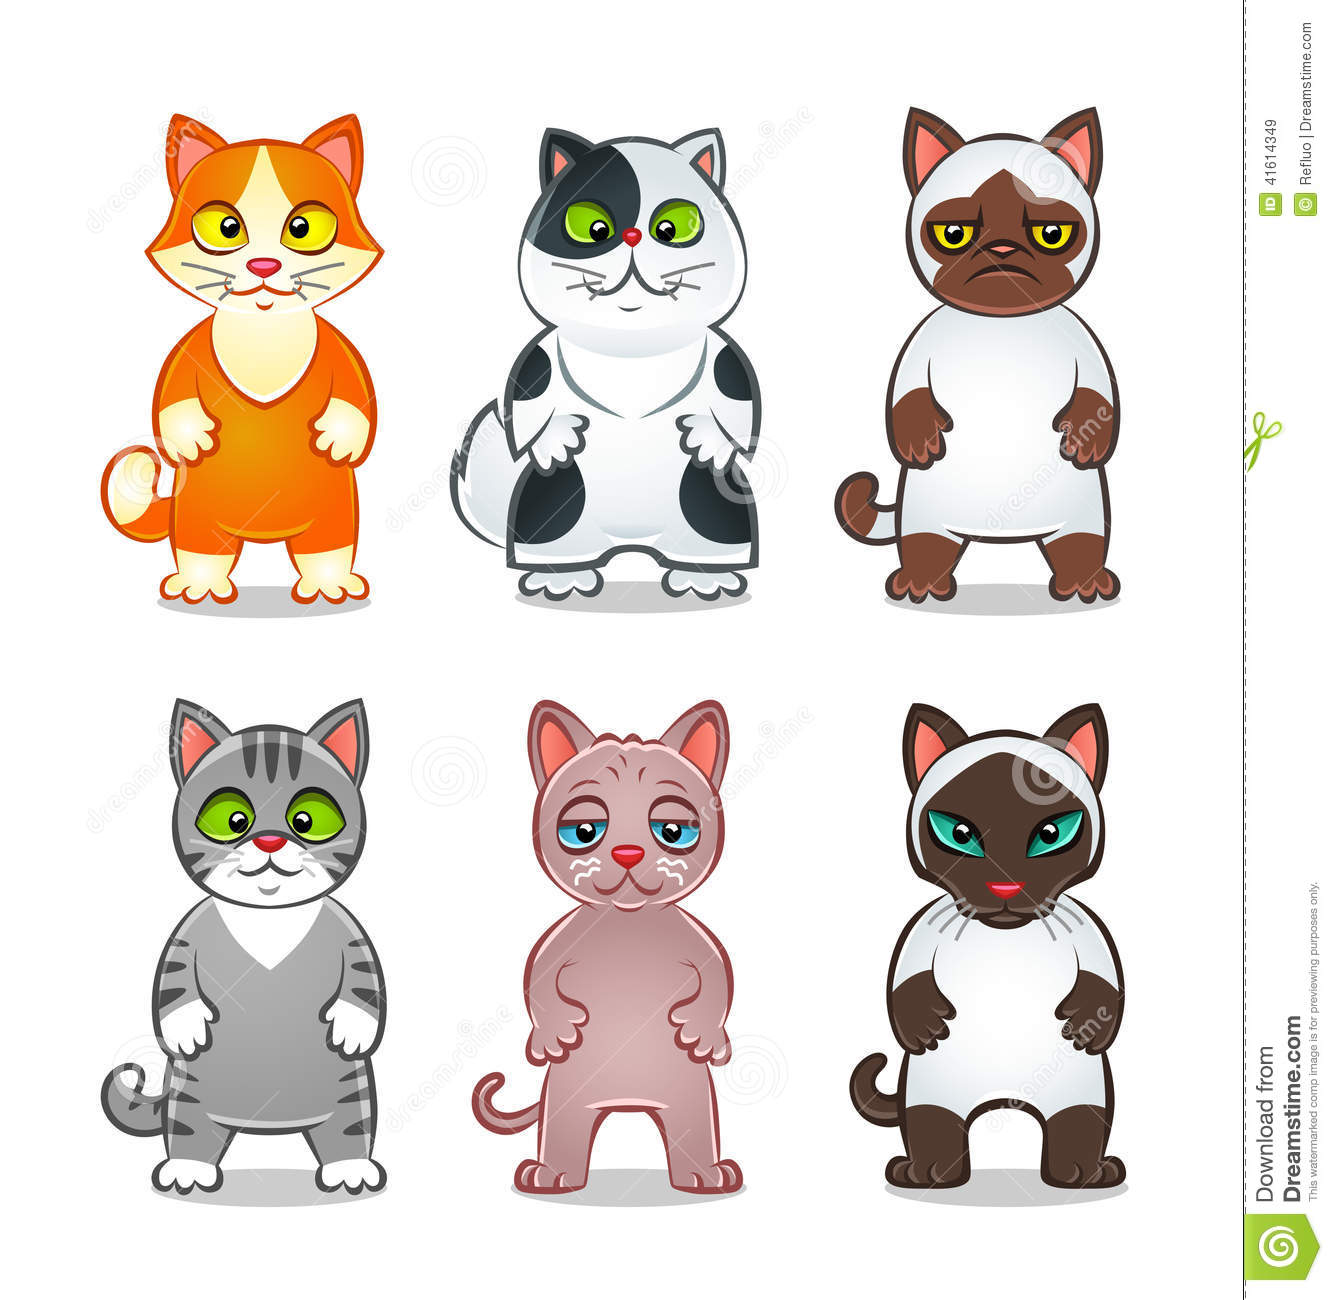 Cartoon cats stock vector. Illustration of kitten, kitty